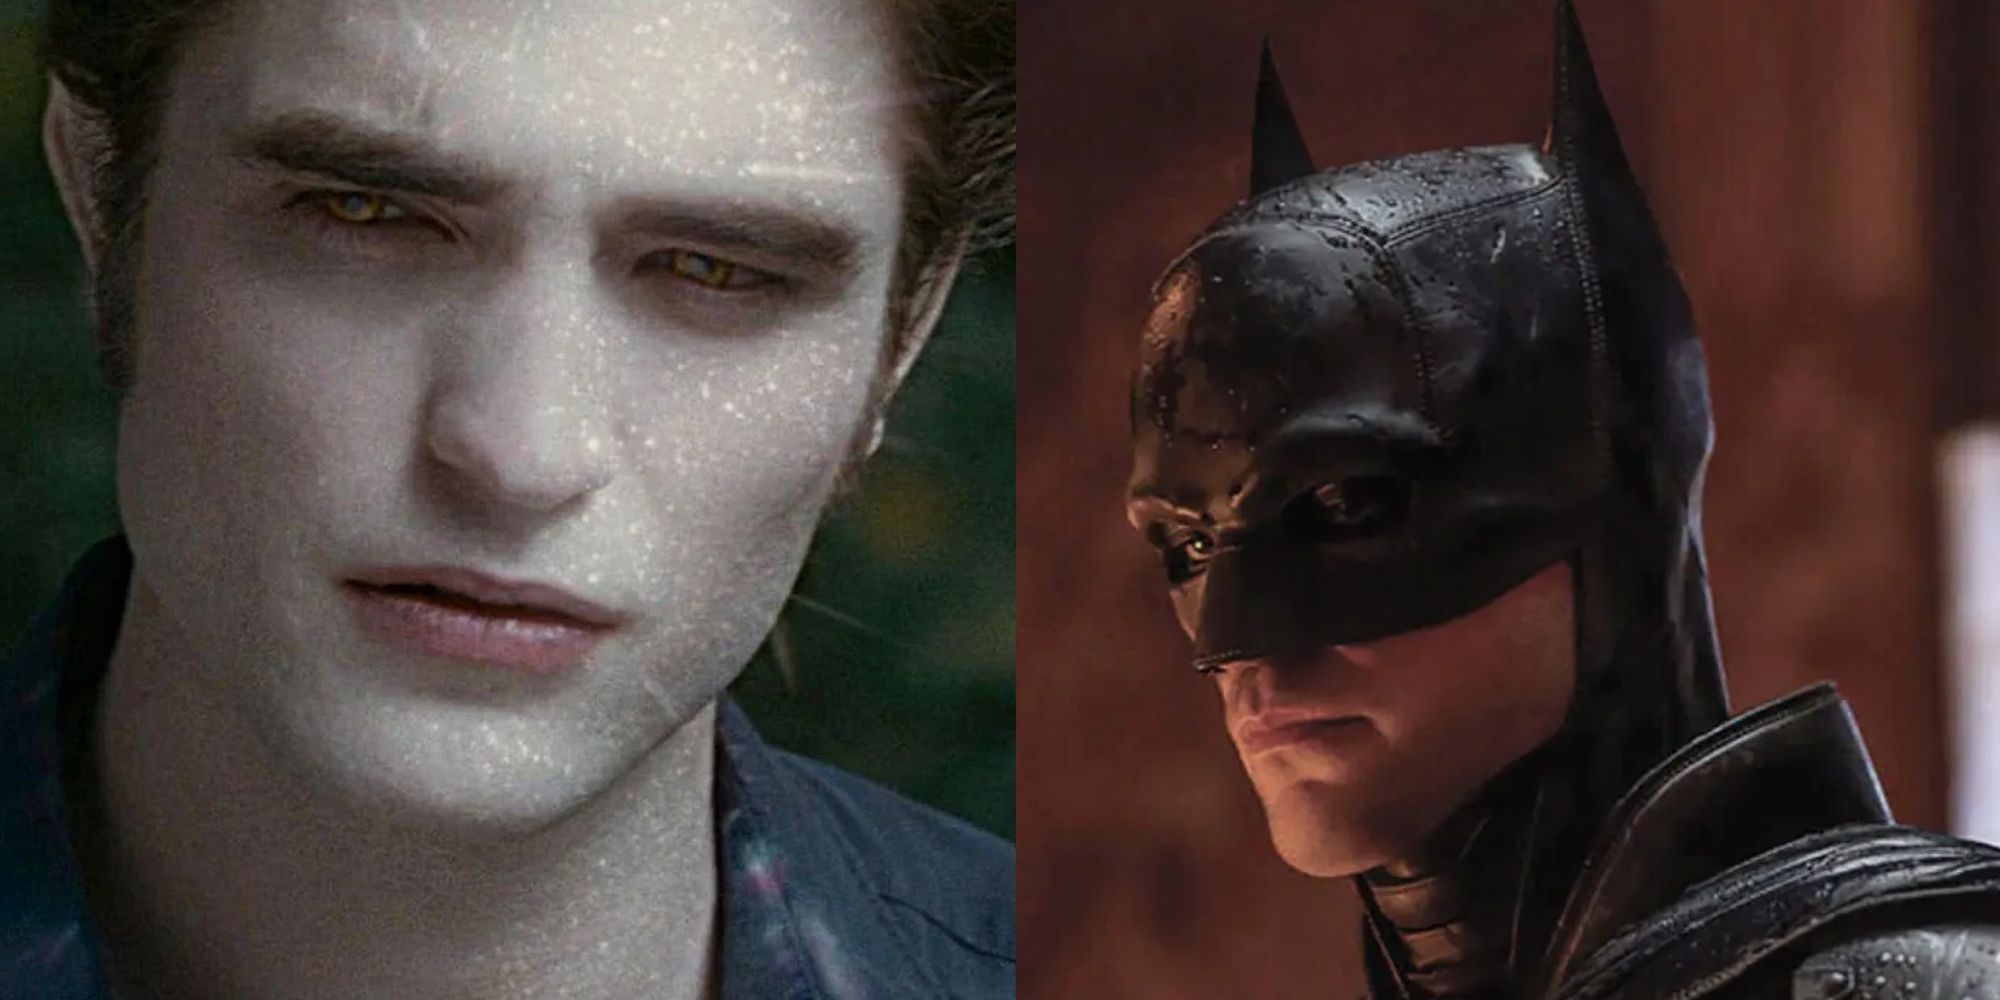 Edward in the sun and Batman in mask